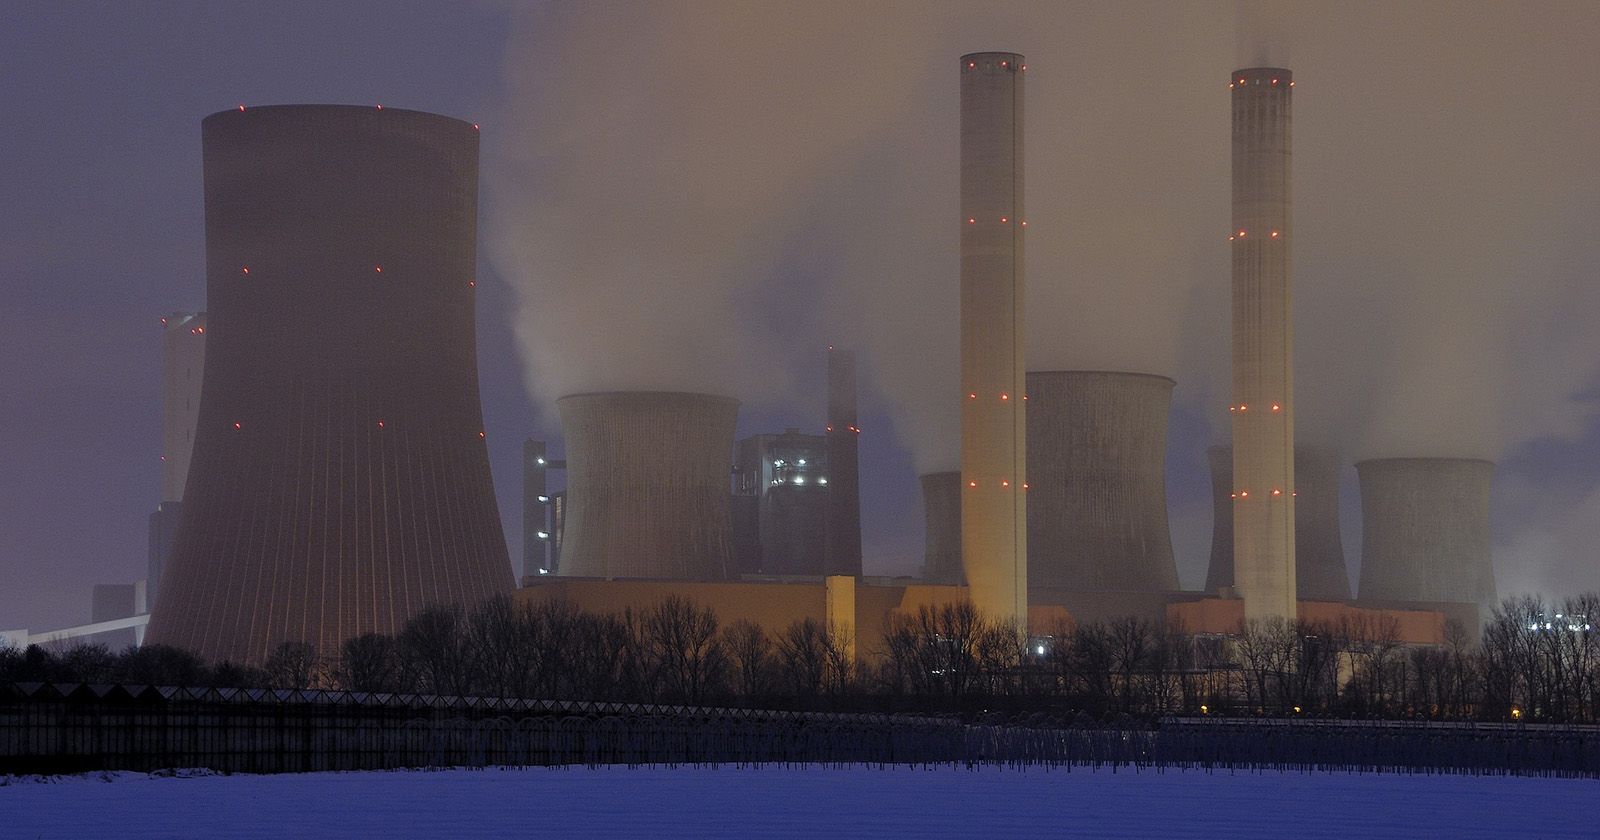  Elektrownia atomowa, kominy z wydobywającym się z nich dymem